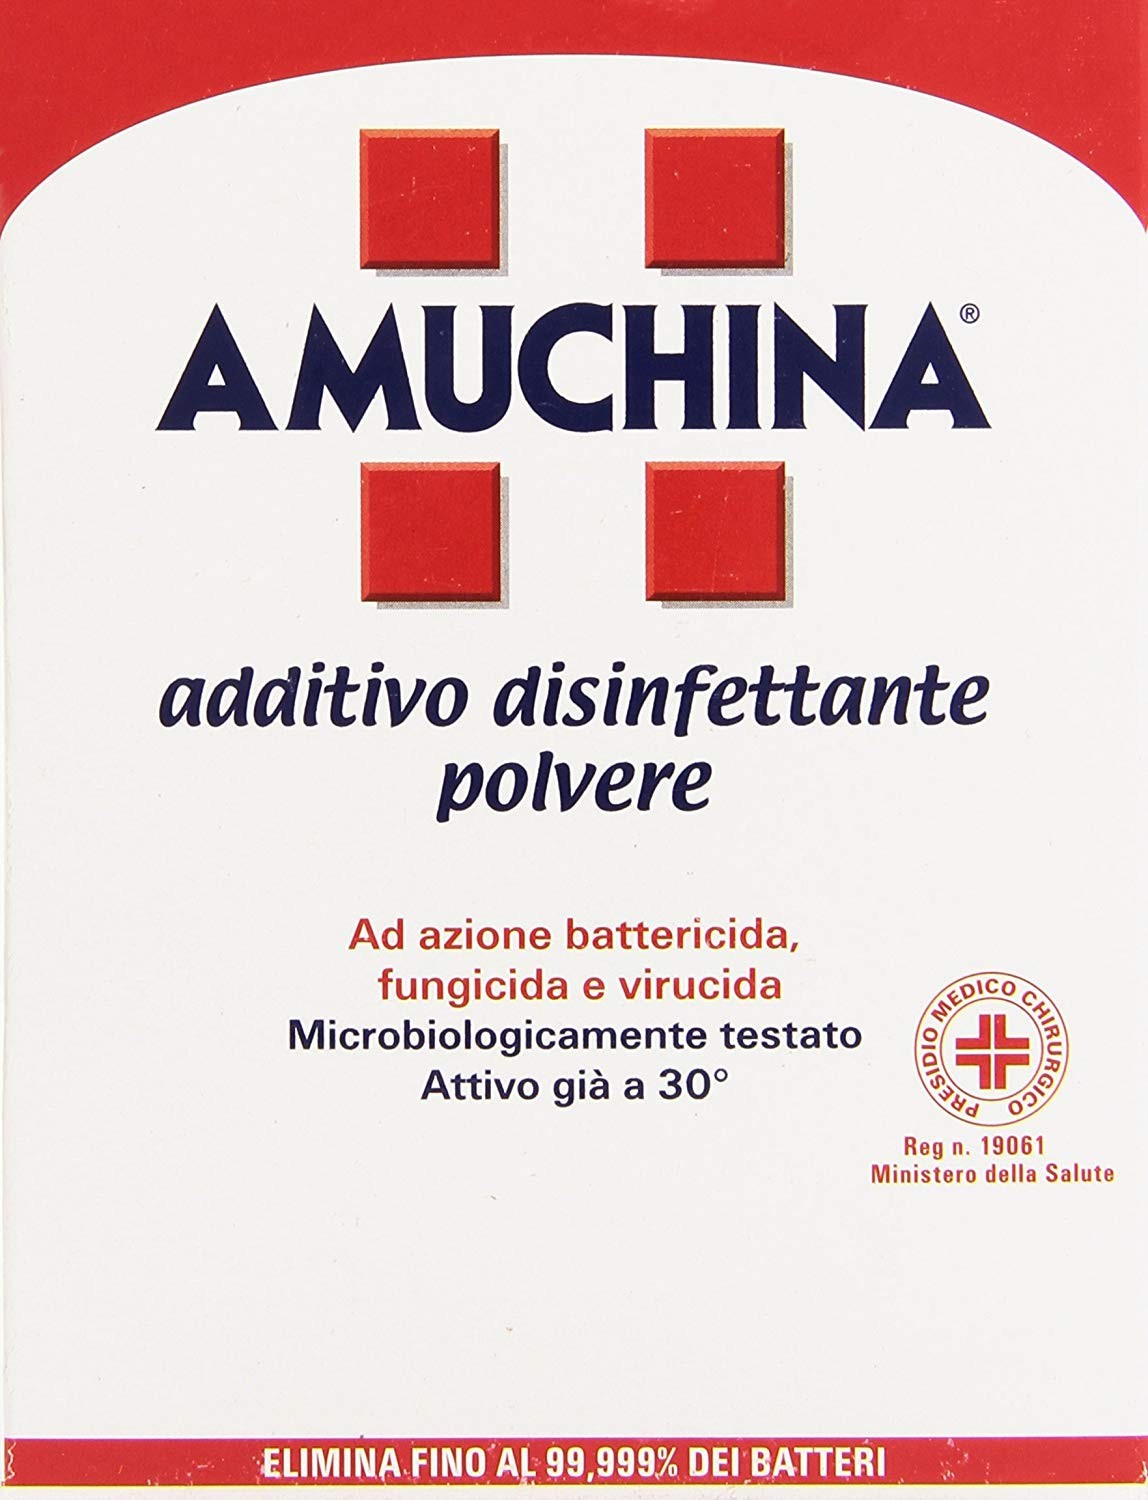 Amuchina - Additivo Disinfettante Polvere, Ad Azione Battericida, Fungicida  e Virucida - 500 g – Raspada